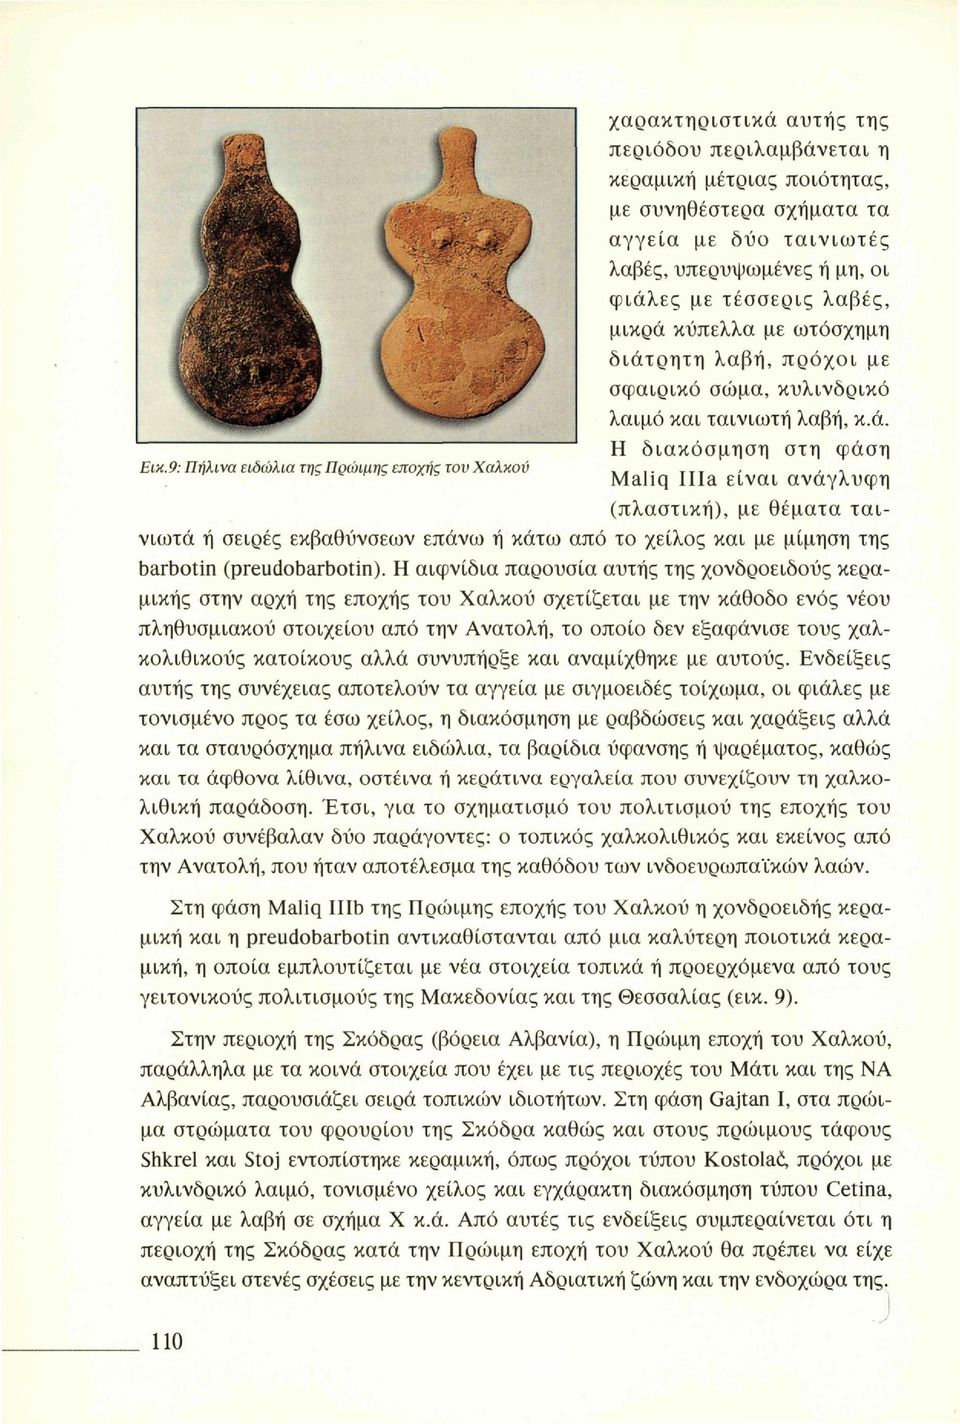 9: Πήλινα ειδώλια της Πρώιμης εποχής τον Χαλκού Maliq Illa είναι ανάγλυφη (πλαστική), με θέματα ταινιωτά ή σειρές εκβαθύνσεων επάνω ή κάτω από το χείλος και με μίμηση της barbotin (preudobarbotin).